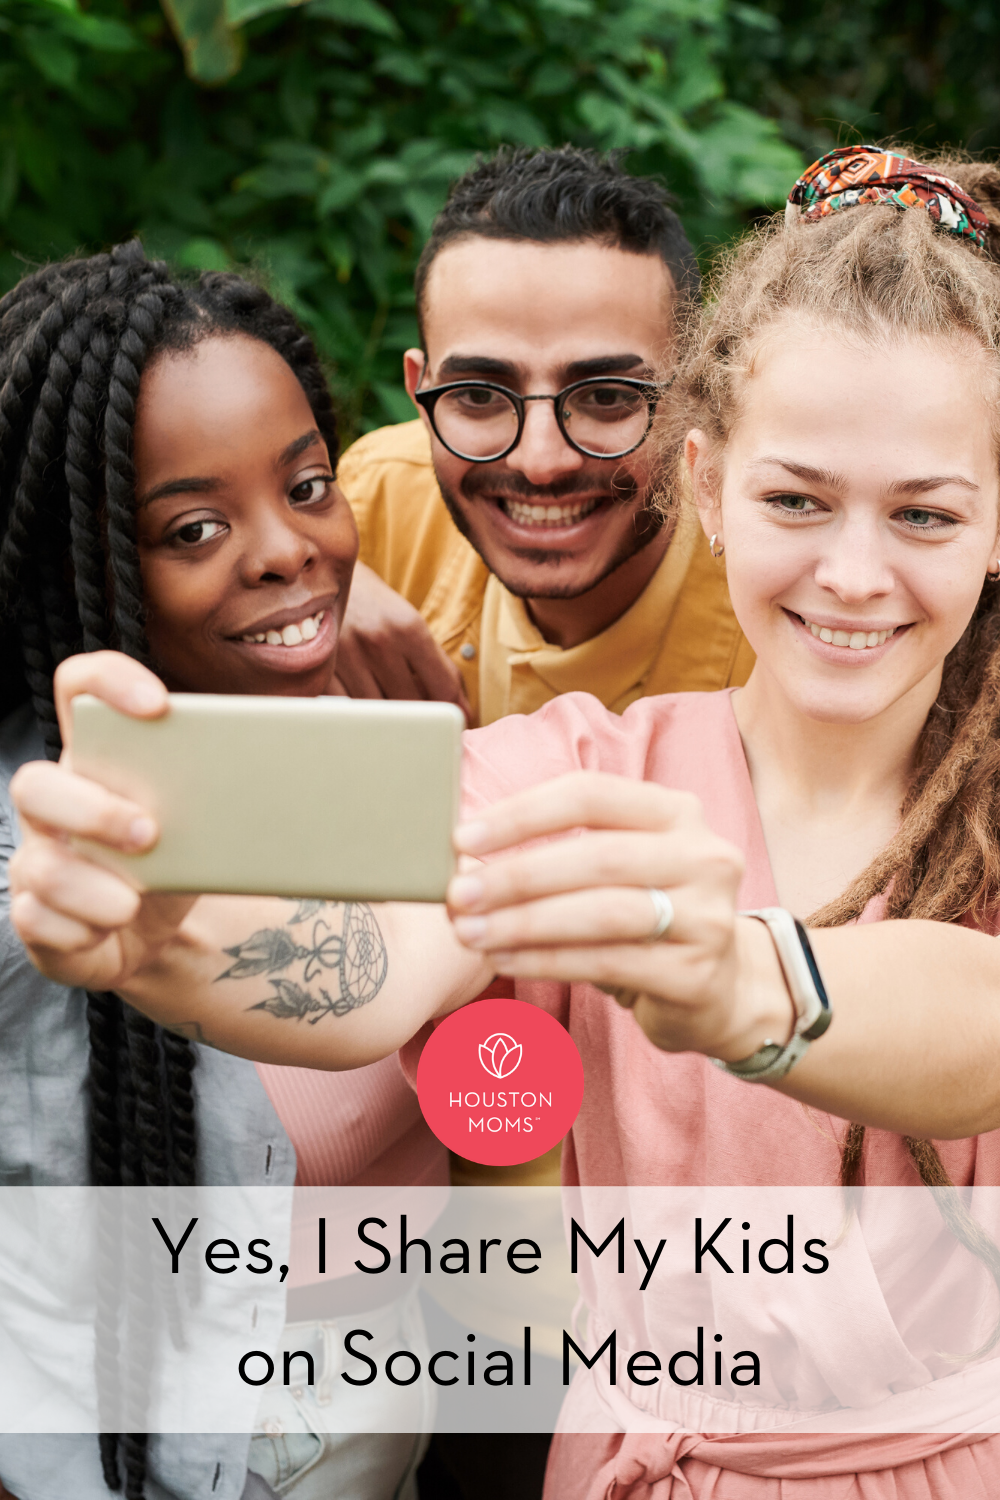 Houston Moms "Yes, I Share My Kids on Social Media" #houstonmoms #houstonmomsblog #momsaroundhouston